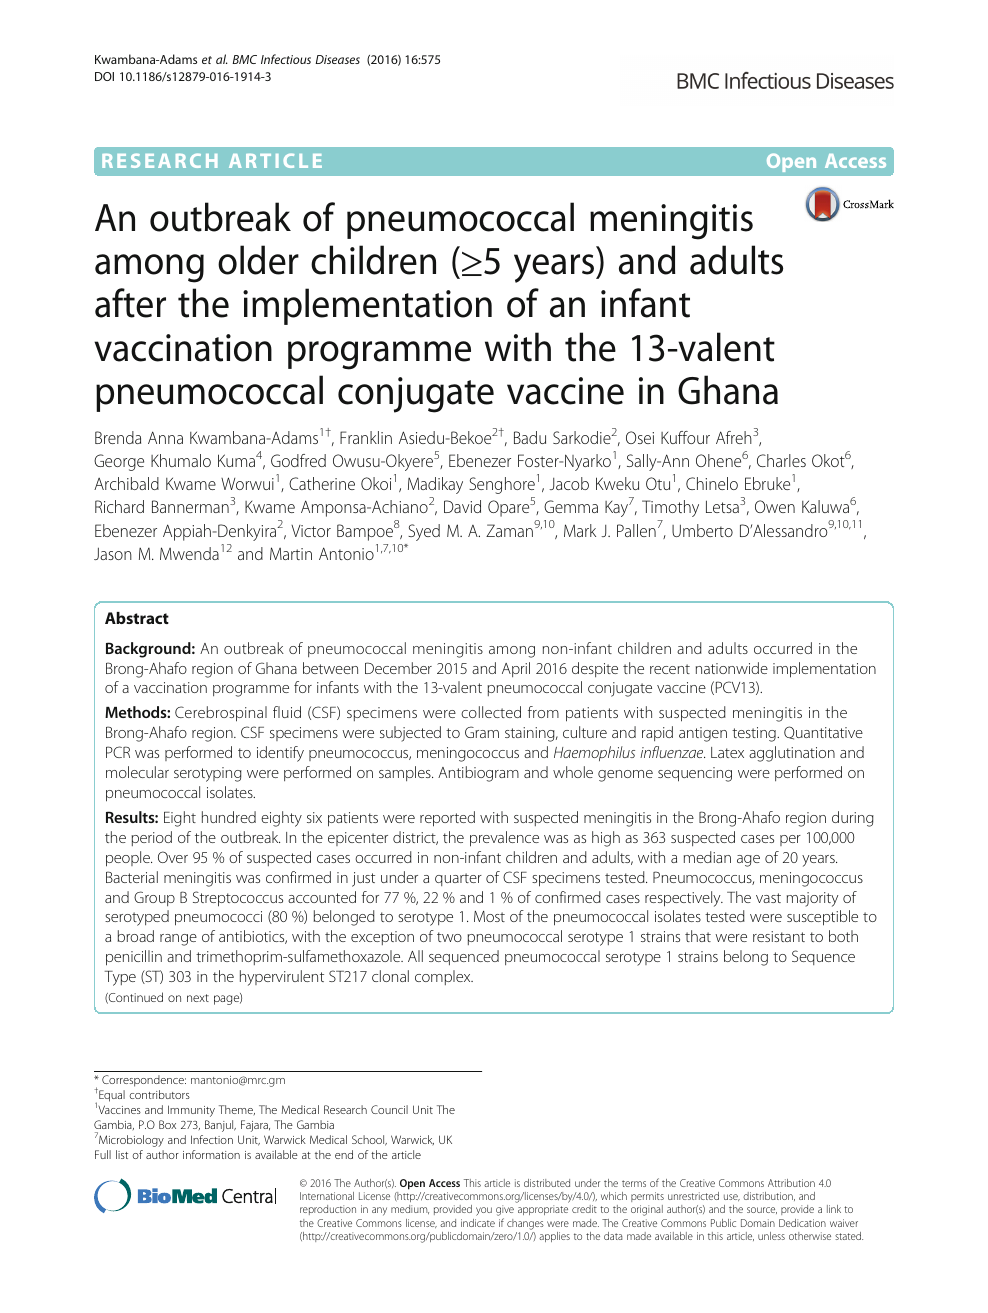 An outbreak of pneumococcal meningitis among older children (≥5